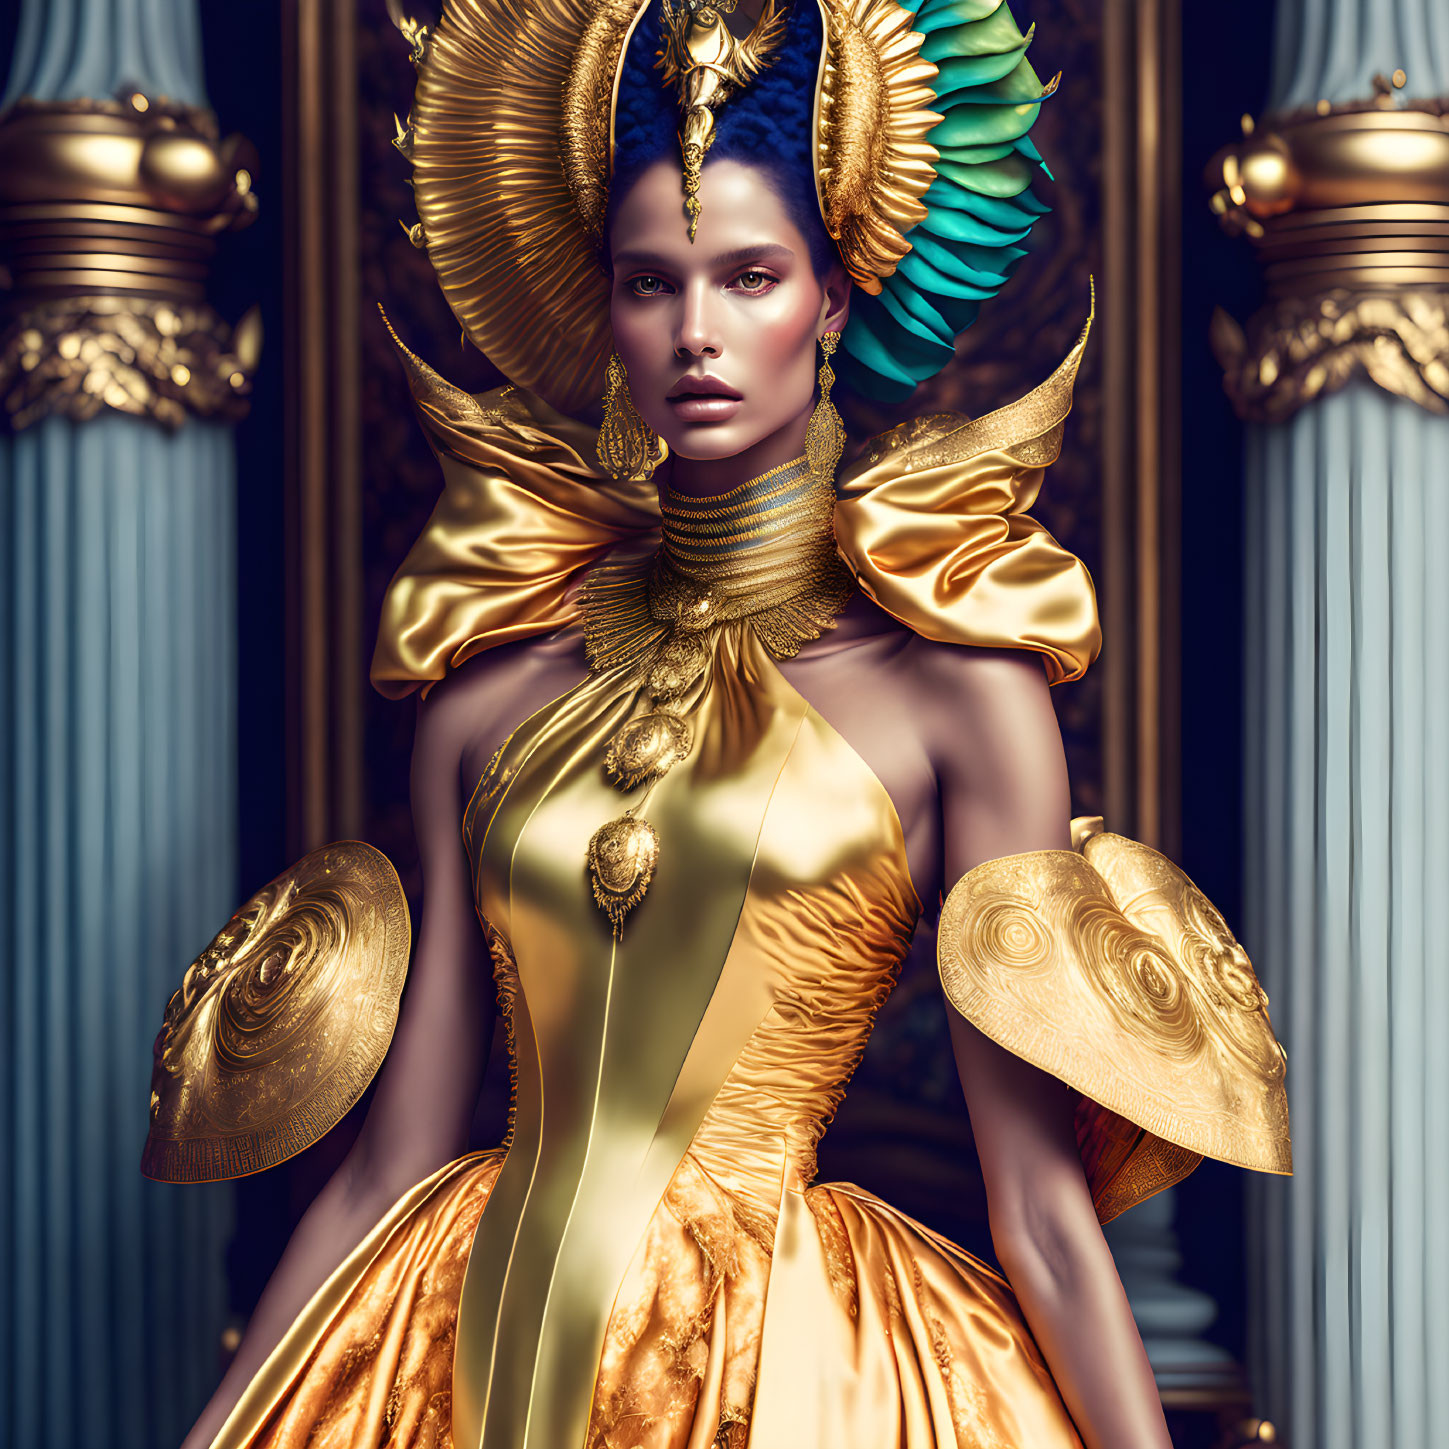 Golden goddess